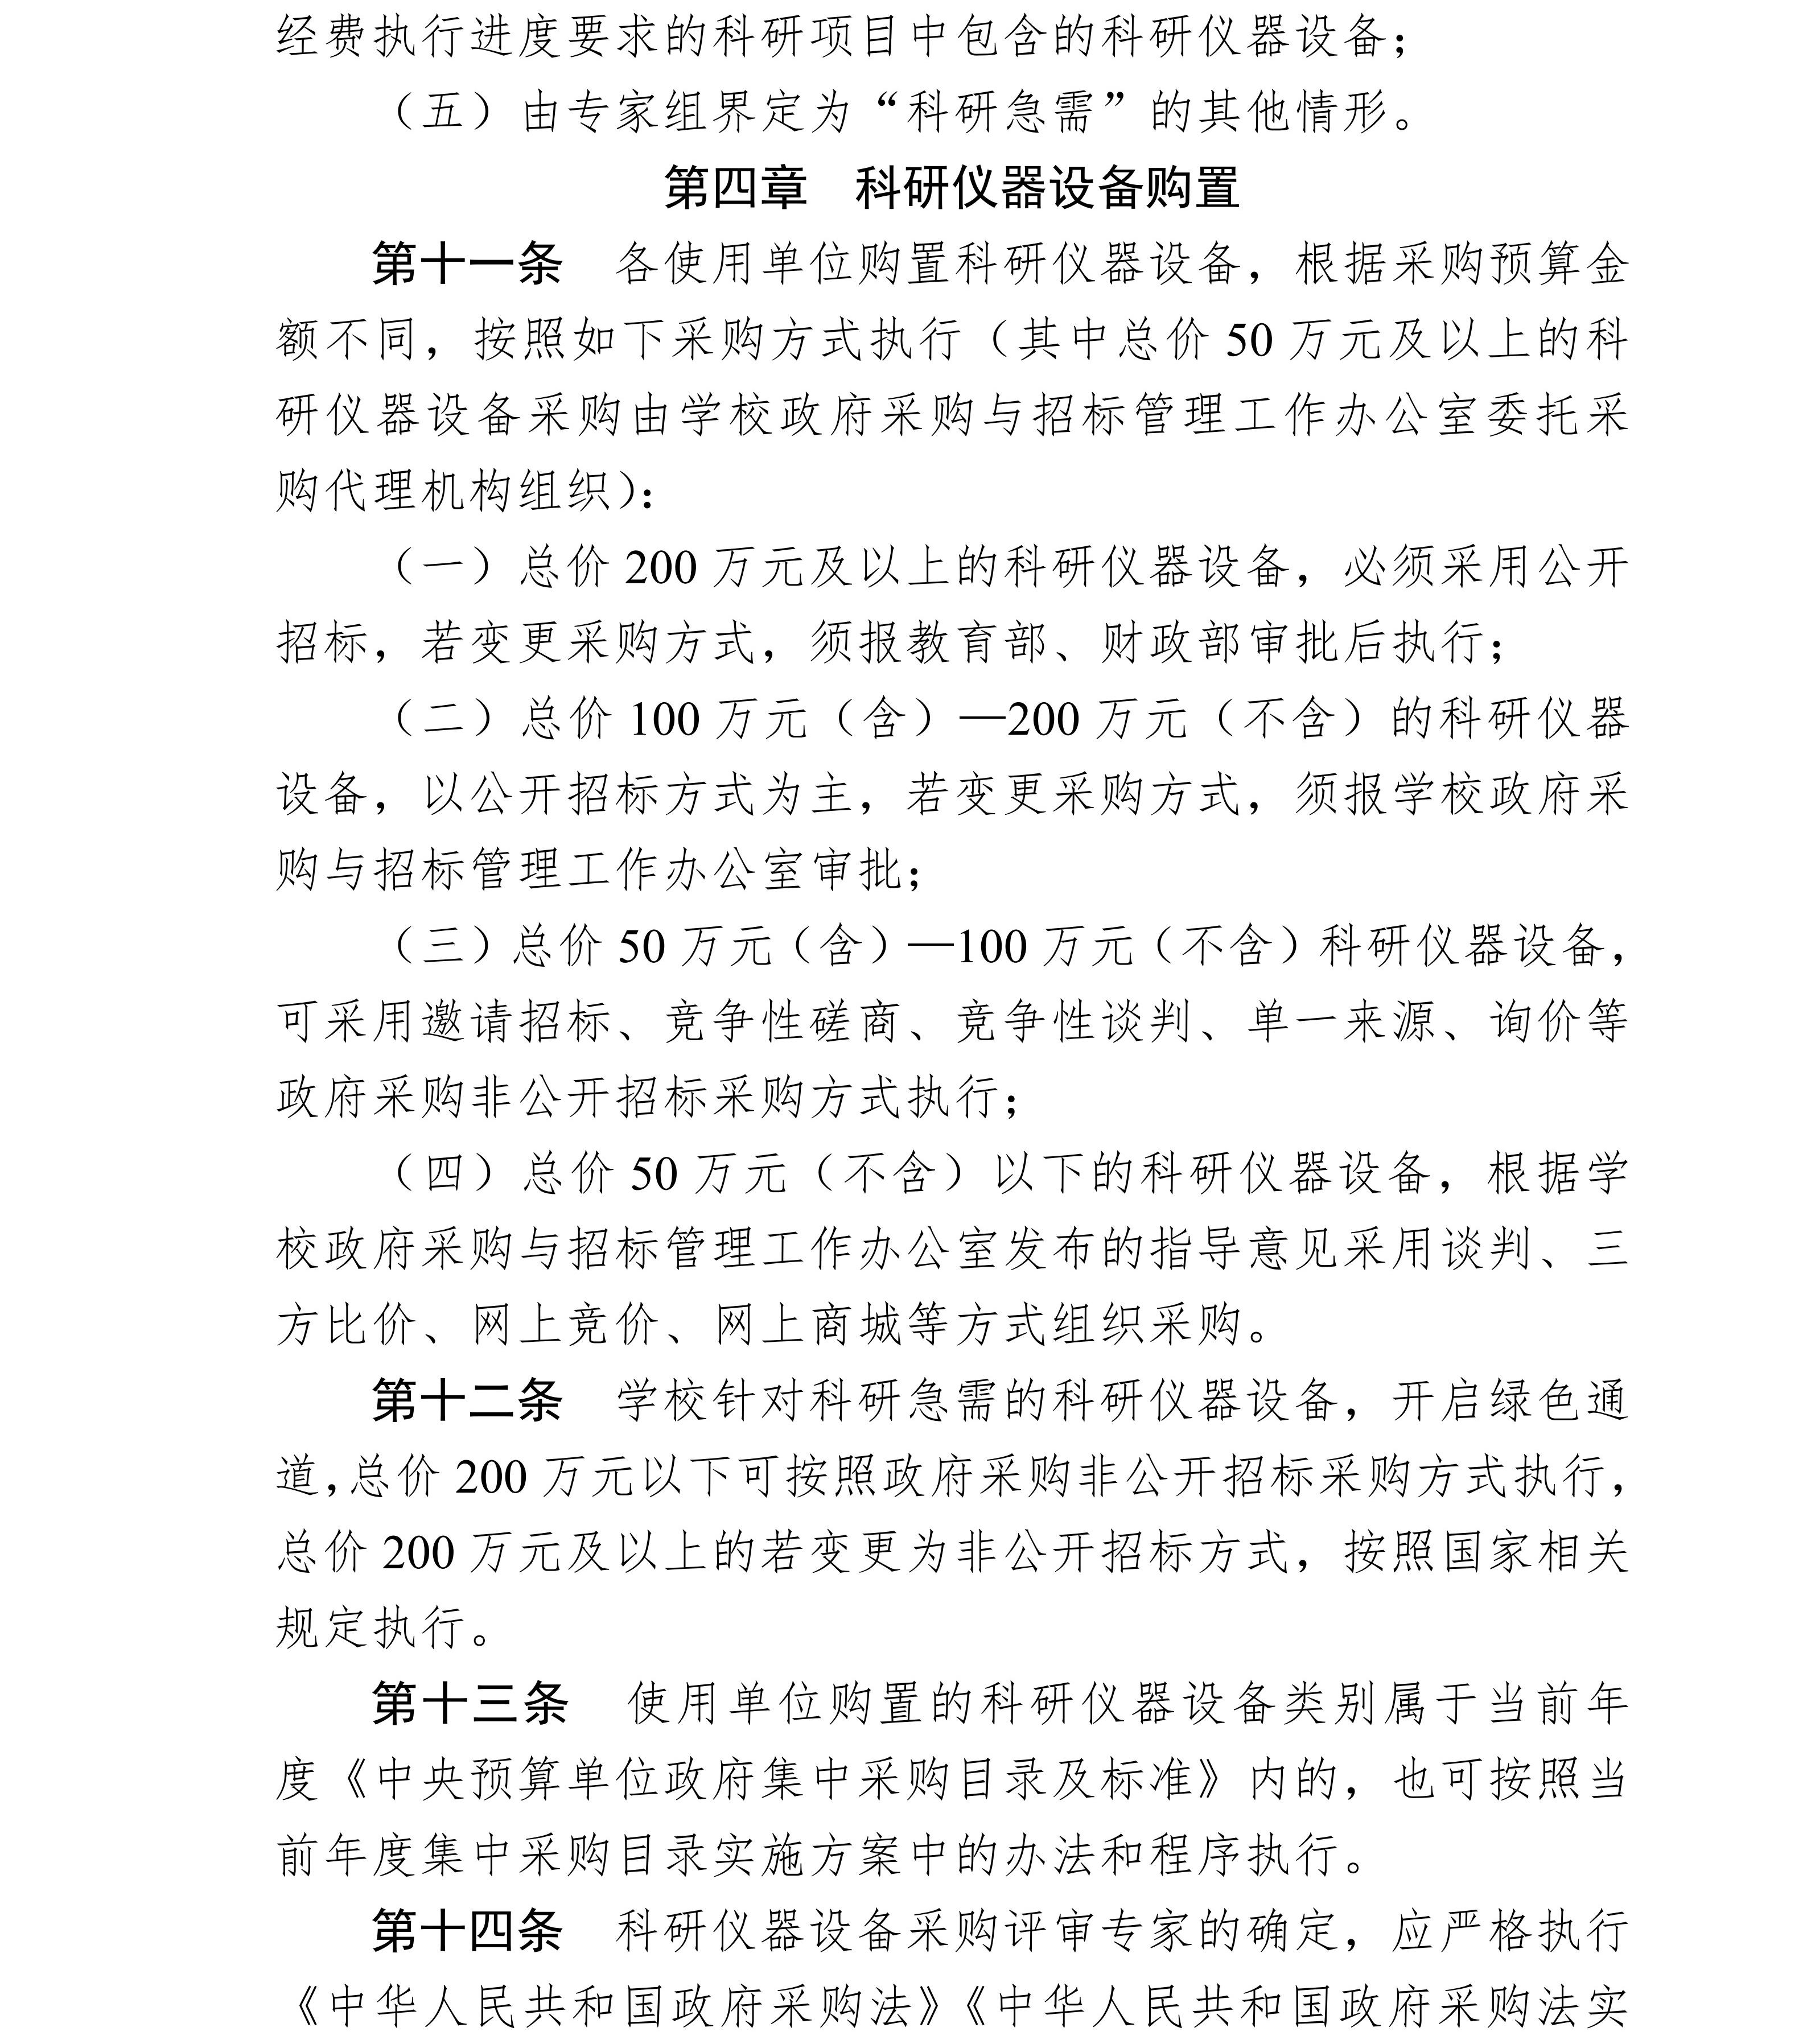 北京师范大学科研仪器设备采购实施细则_4.jpg